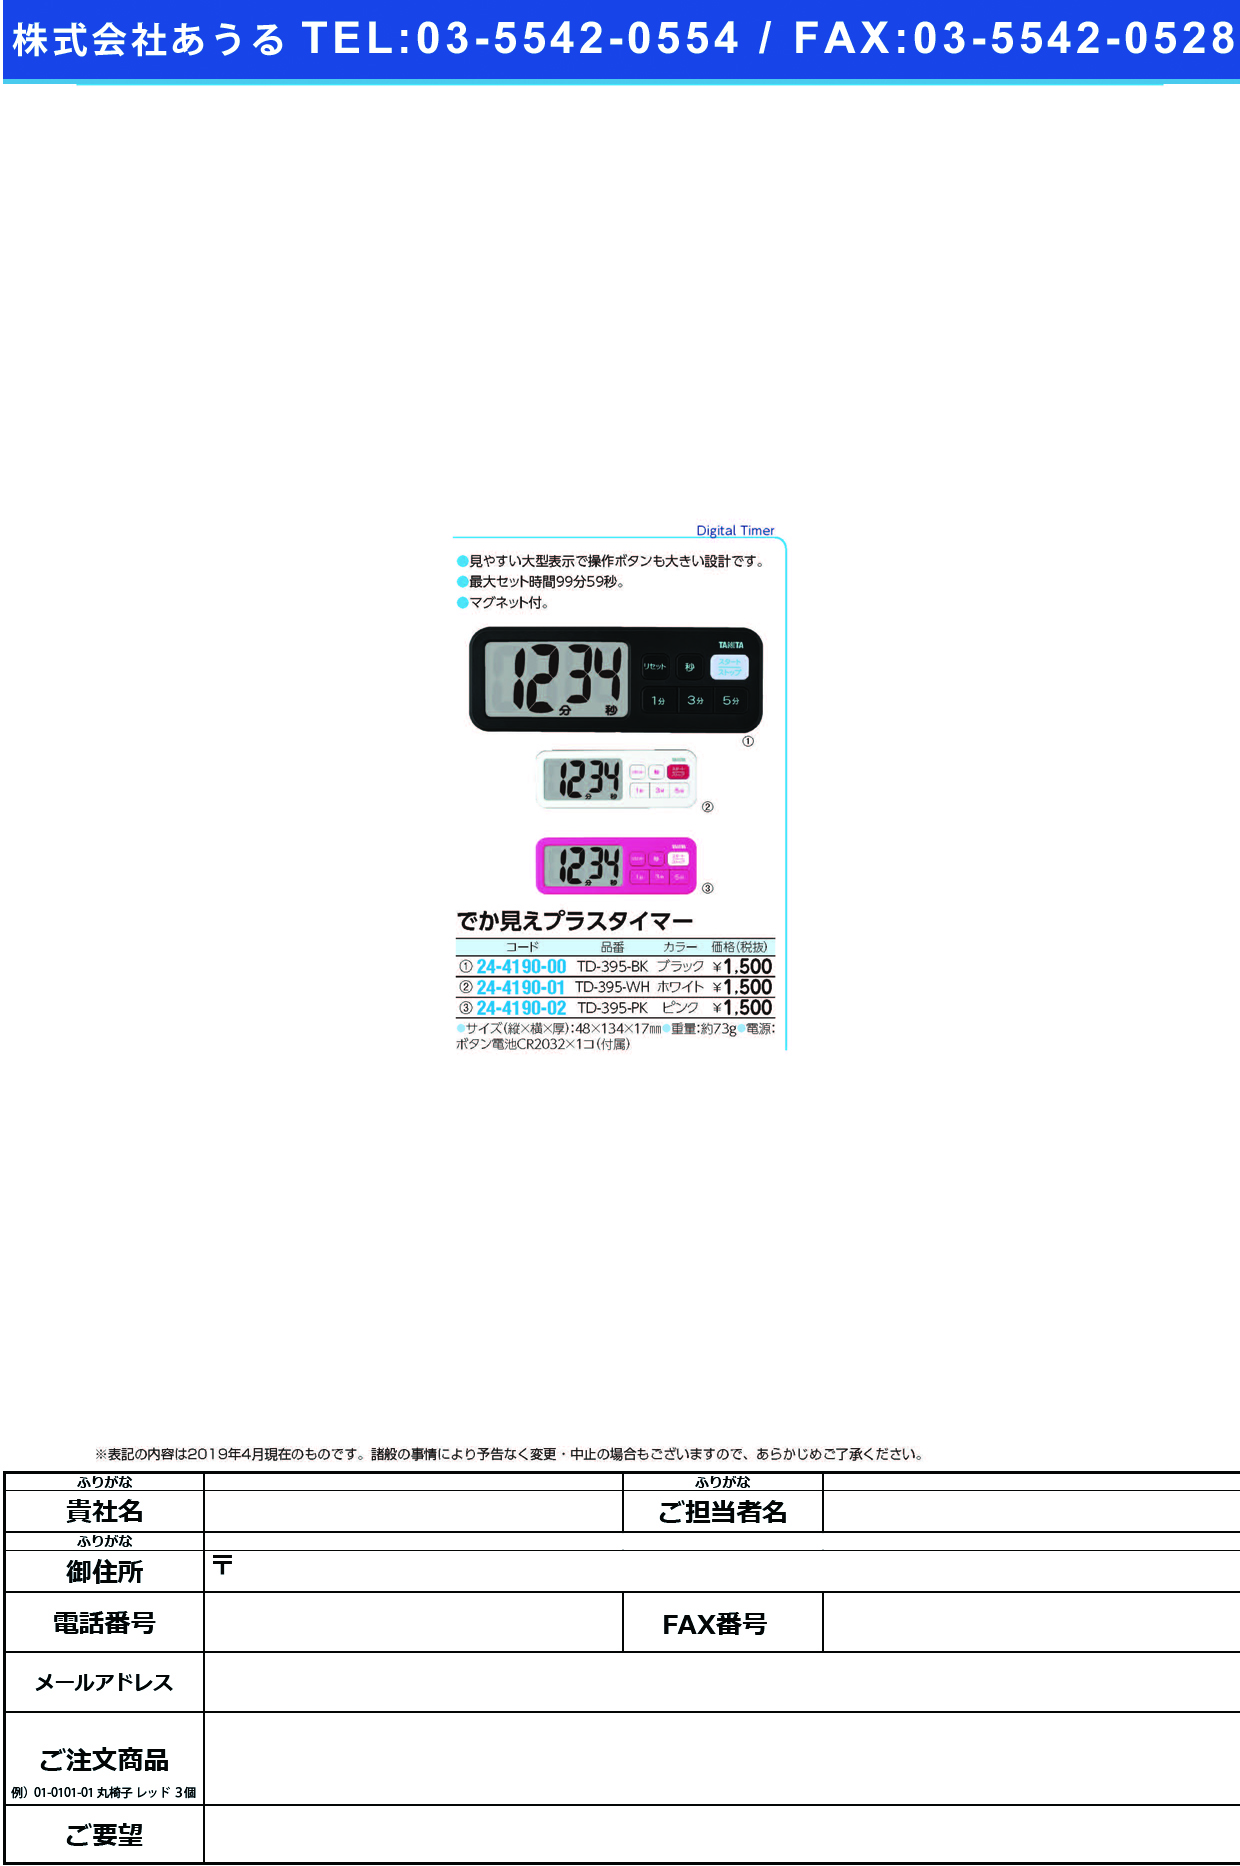 (24-4190-01)デジタルタイマーでか見えプラス TD-395(ﾎﾜｲﾄ) ﾃﾞｼﾞﾀﾙﾀｲﾏｰﾃﾞｶﾐｴﾌﾟﾗｽ(タニタ)【1個単位】【2019年カタログ商品】